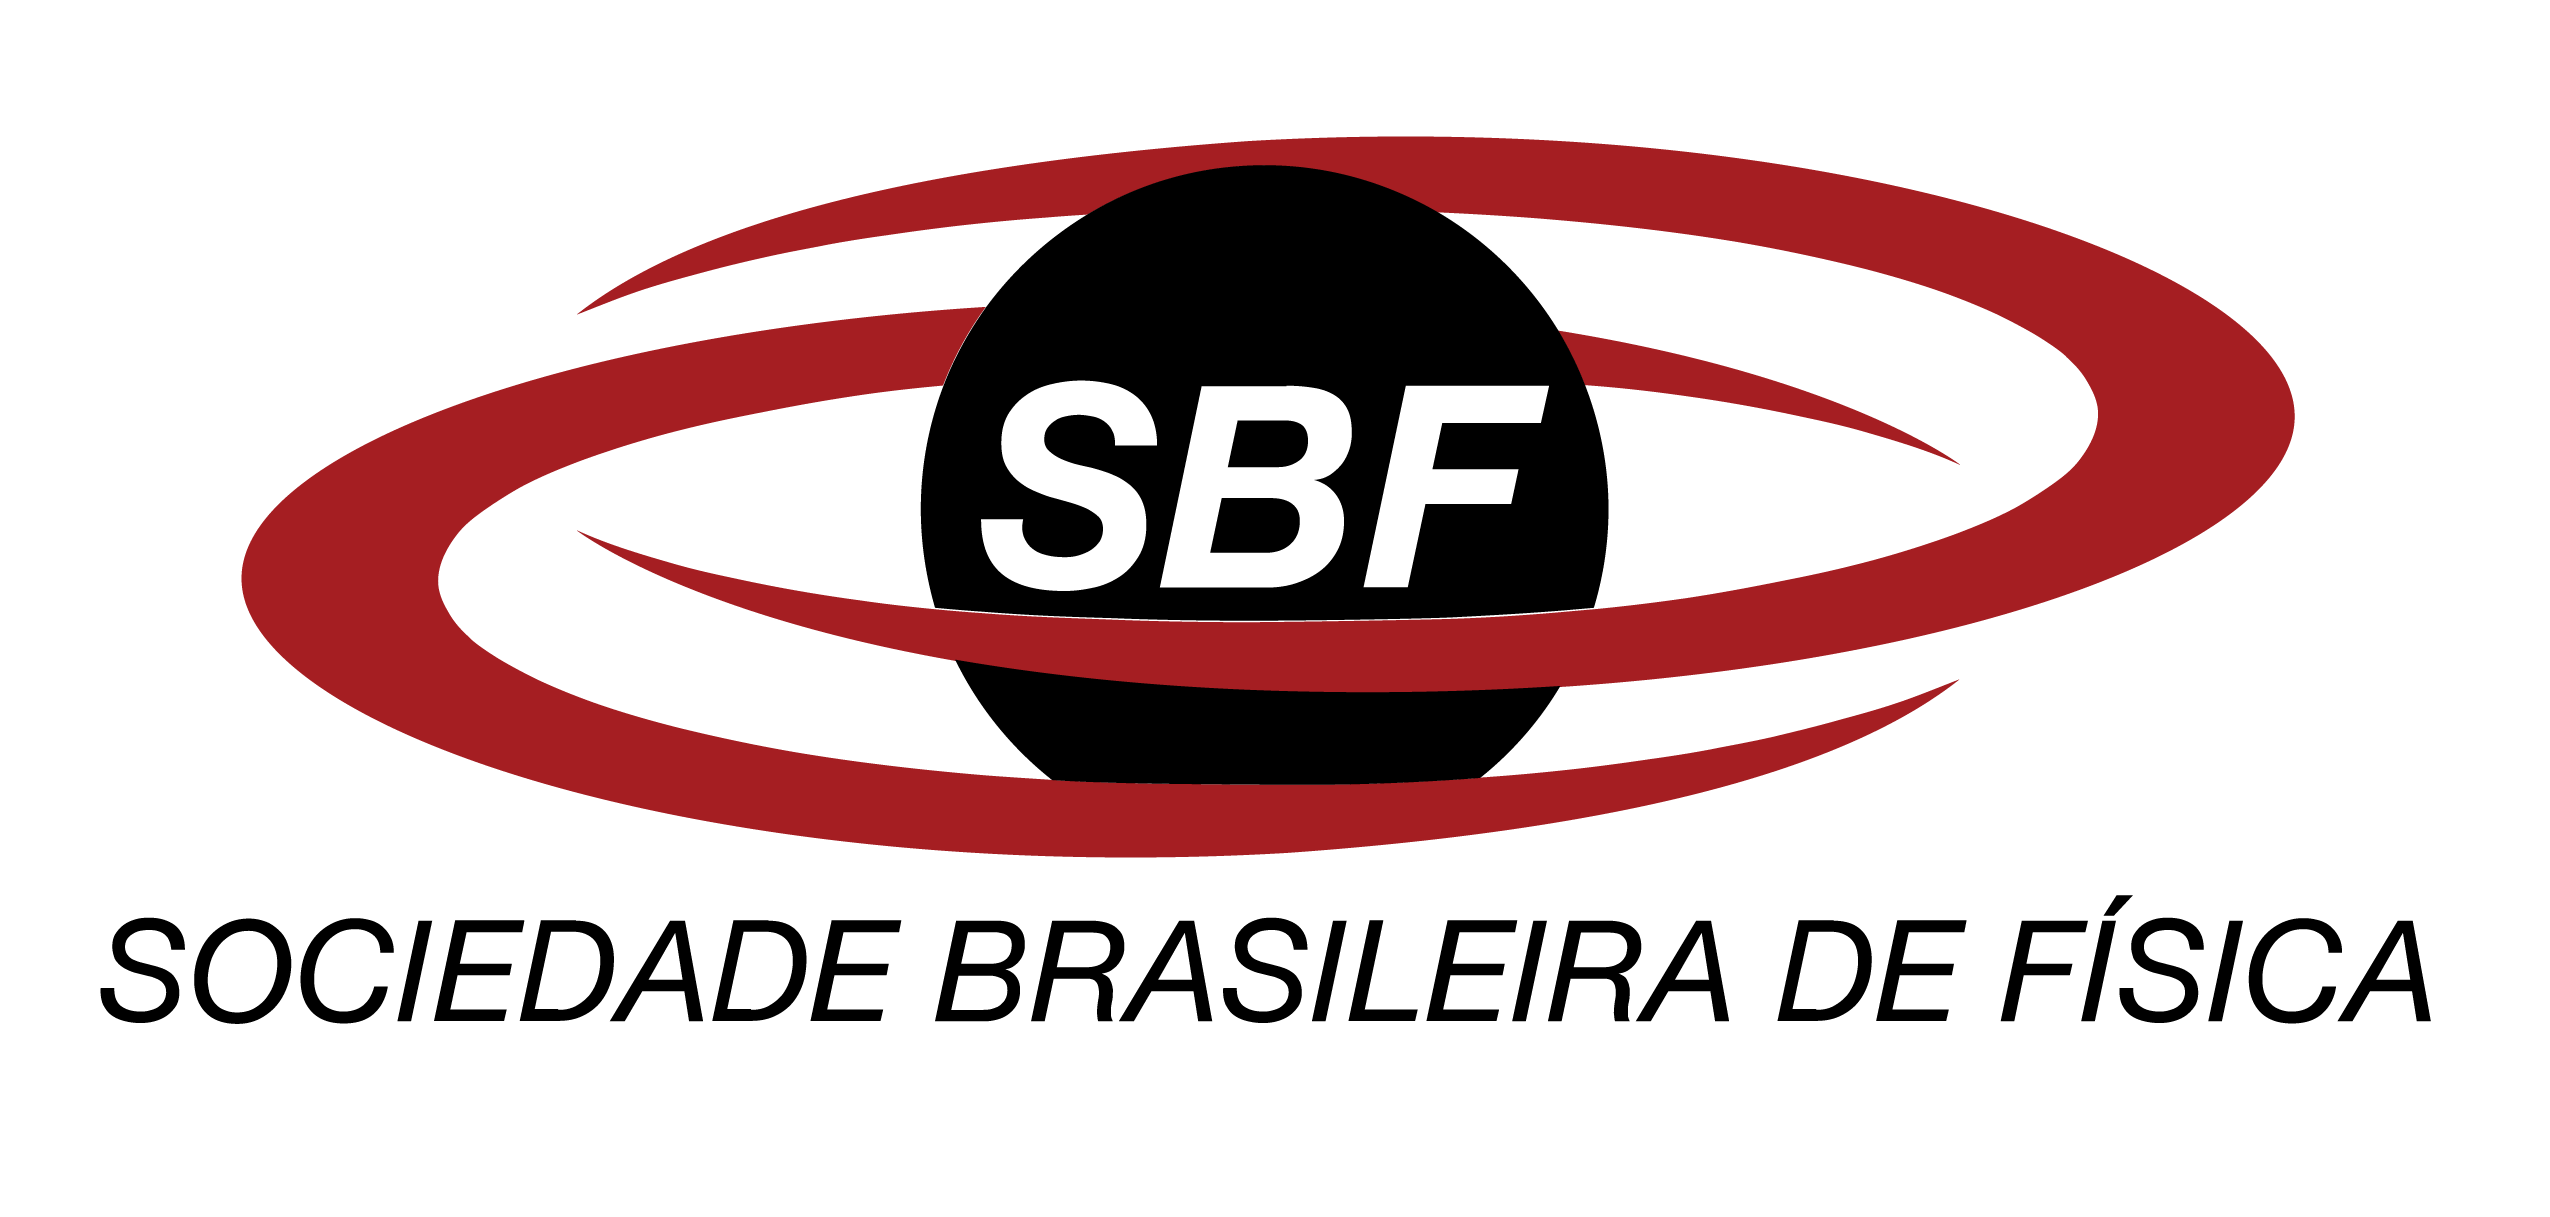 sbf